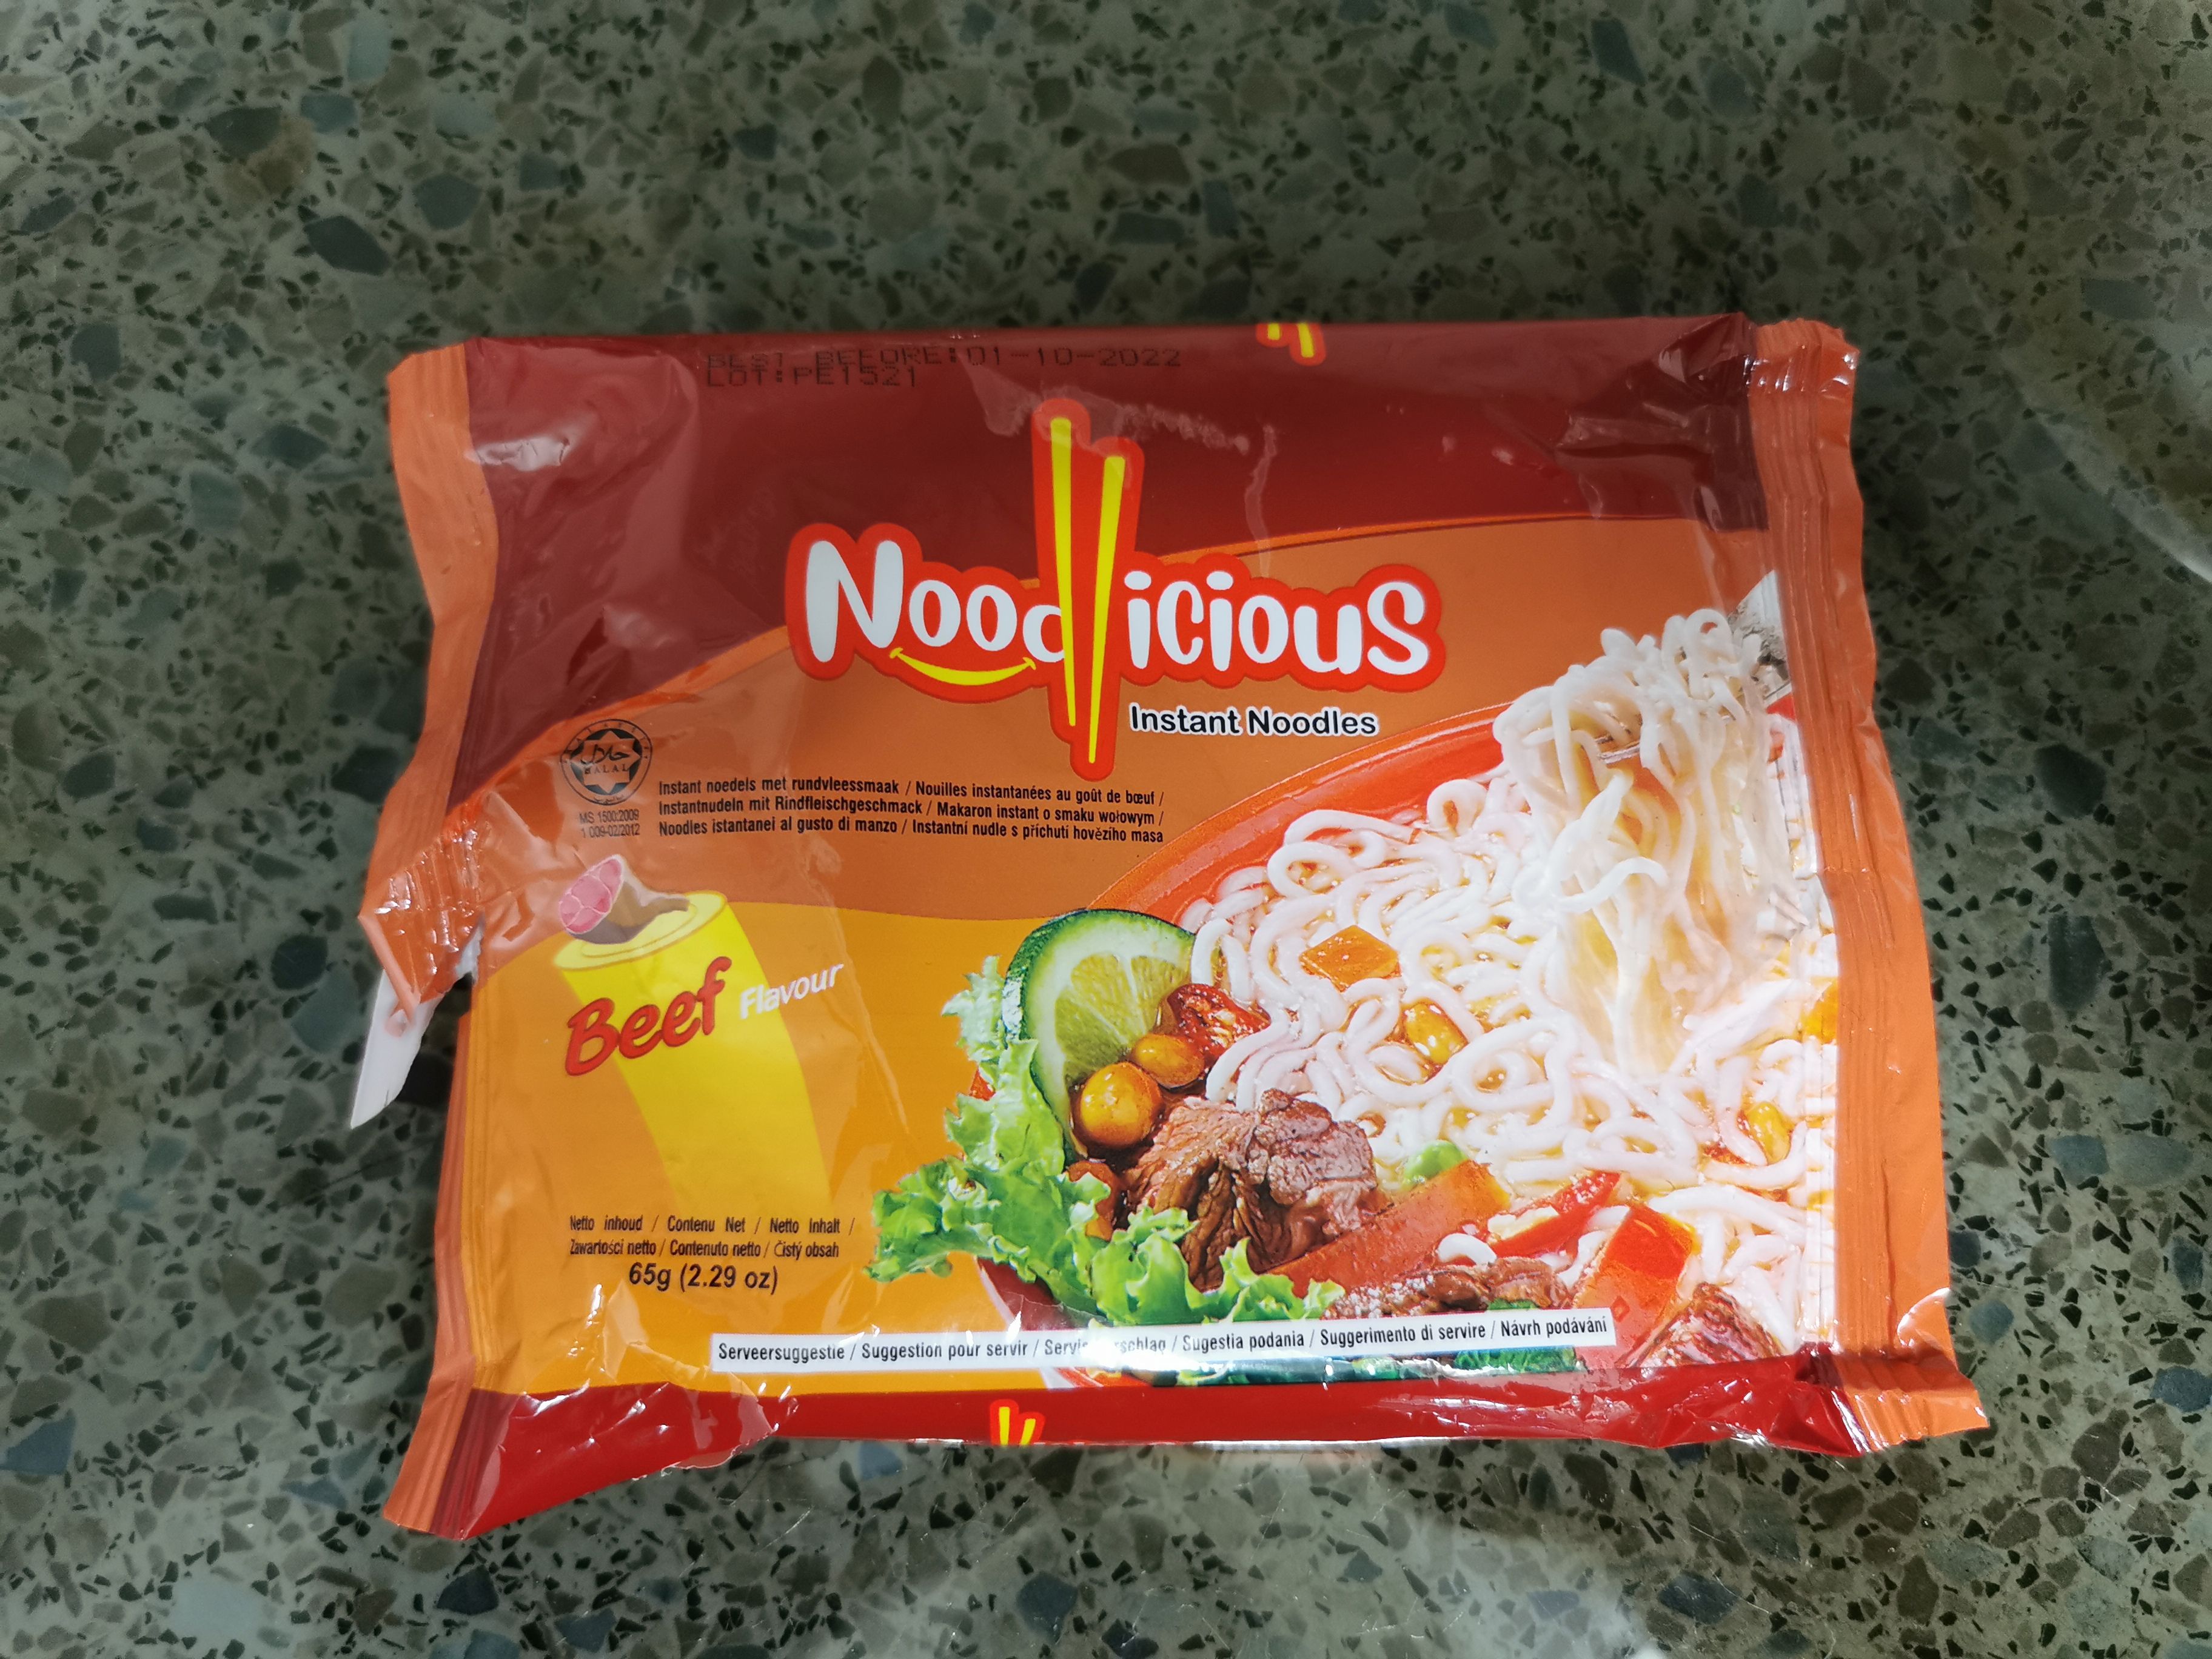 Noodlicious nouilles instantanées Bœuf